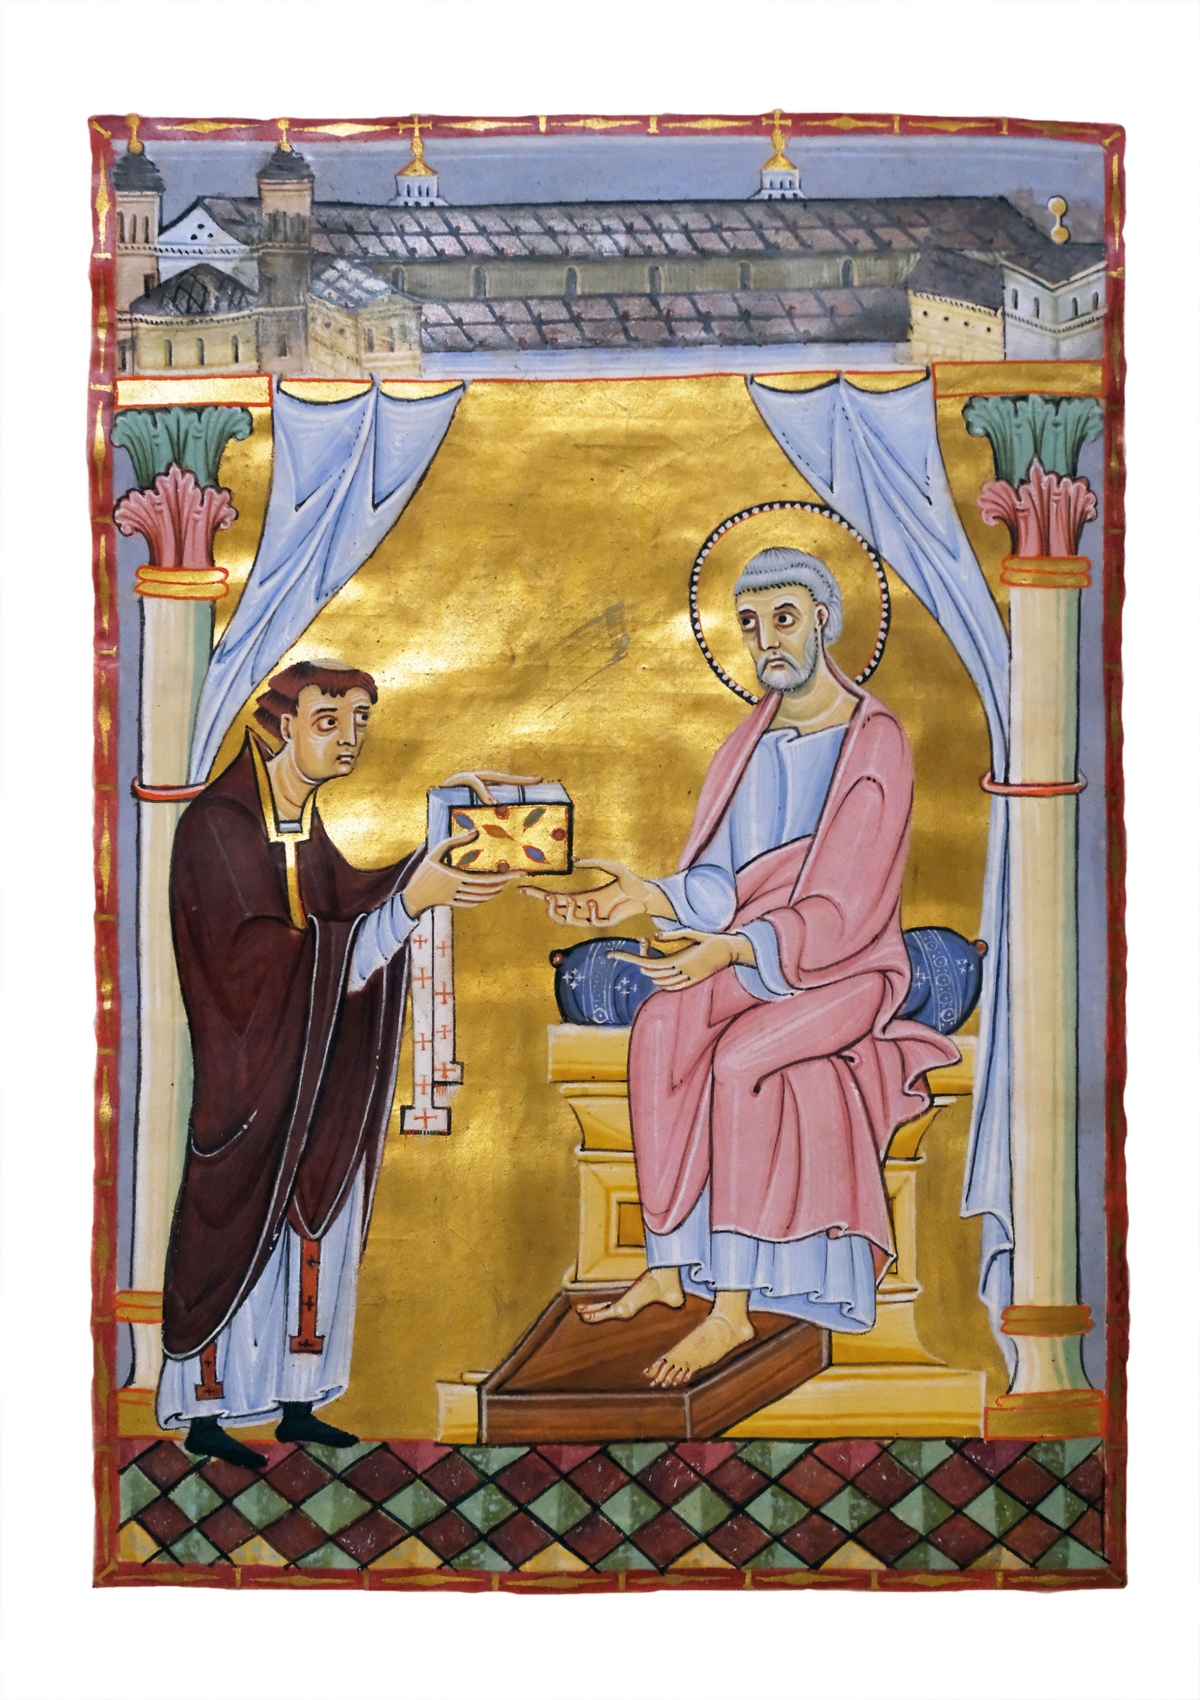 Das Widmungsblatt des Codex zeigt den Domherrn Hillinus bei der Übergabe des von ihm gestifteten kostbaren Buches an den heiligen Petrus, den Patron des Doms. Oben sieht man eine Darstellung des „Alten Doms“, des Vorgängerbaus der heutigen Kathedrale.